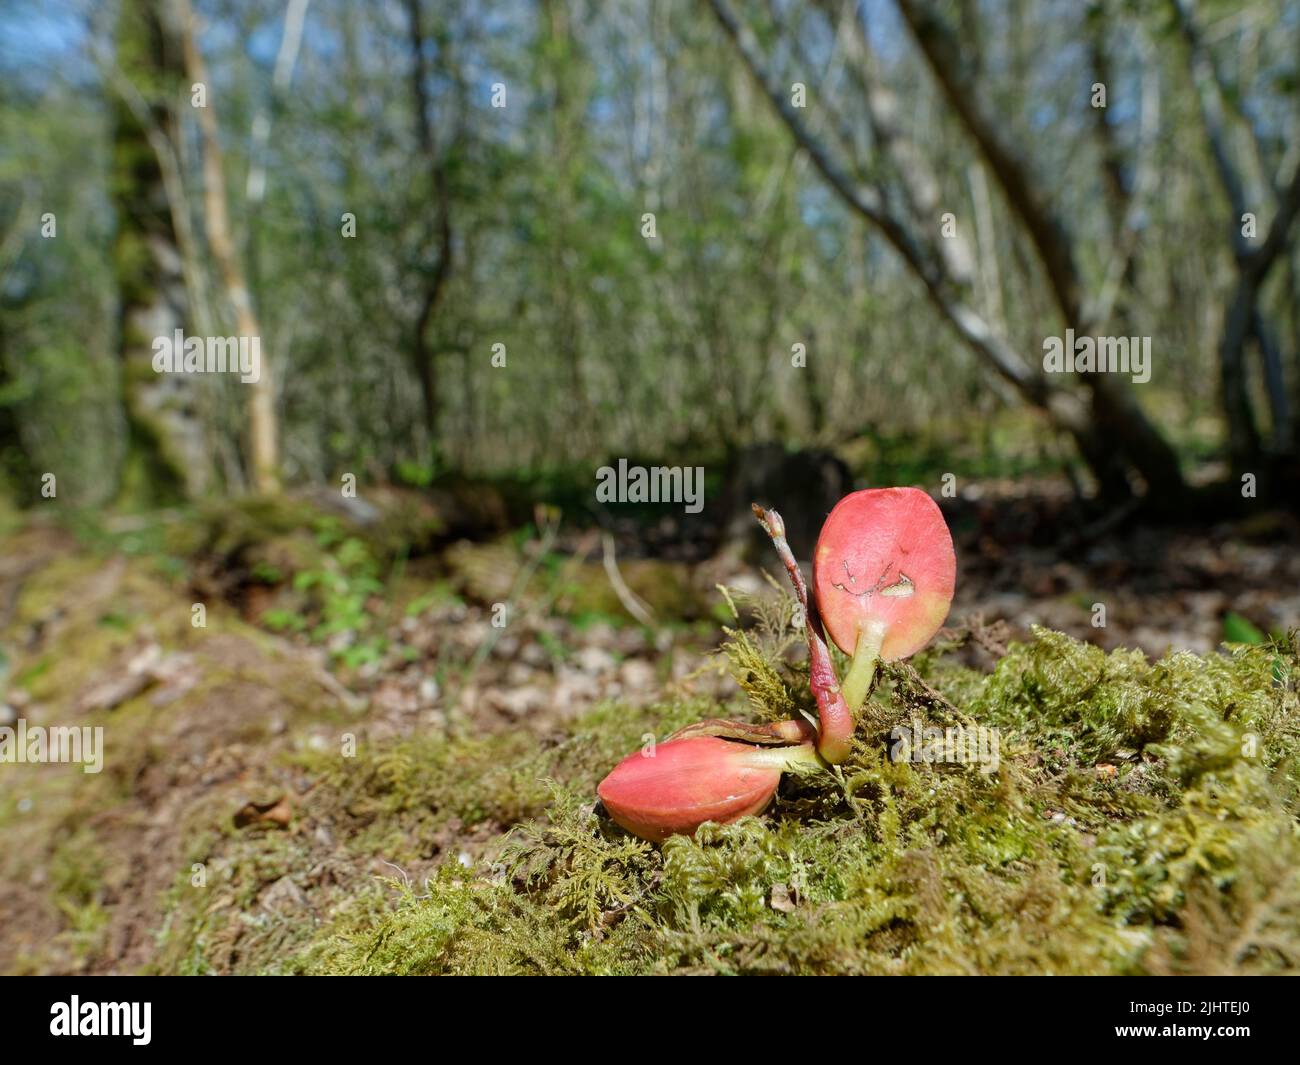 Pedunculate / semis de chêne anglais (Quercus robur) provenant d'un gland avec des cotylédons rouges visibles, GWT Lower Woods Reserve, Gloucestershire, Royaume-Uni Banque D'Images